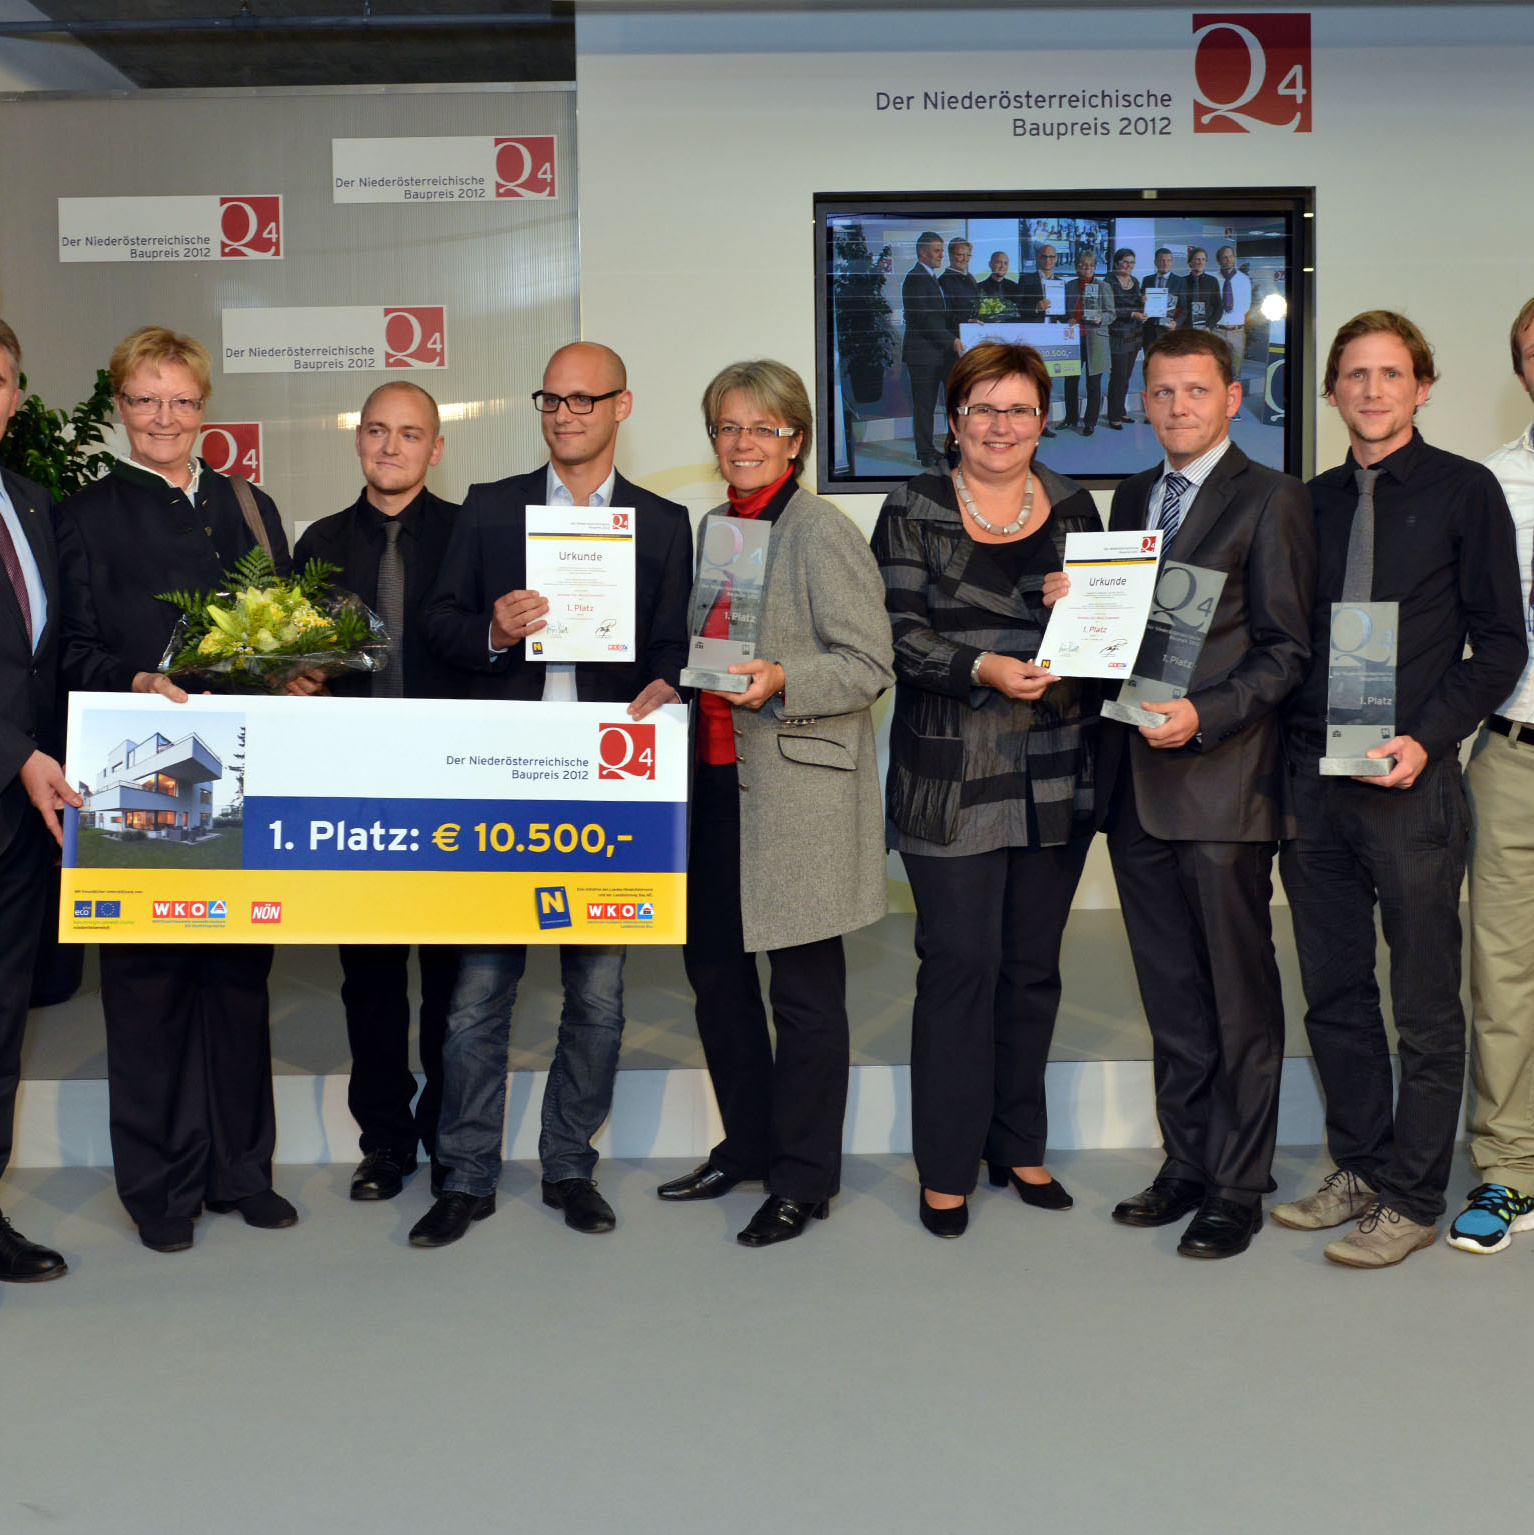 1. Platz Niederösterreichischer Baupreis 2012